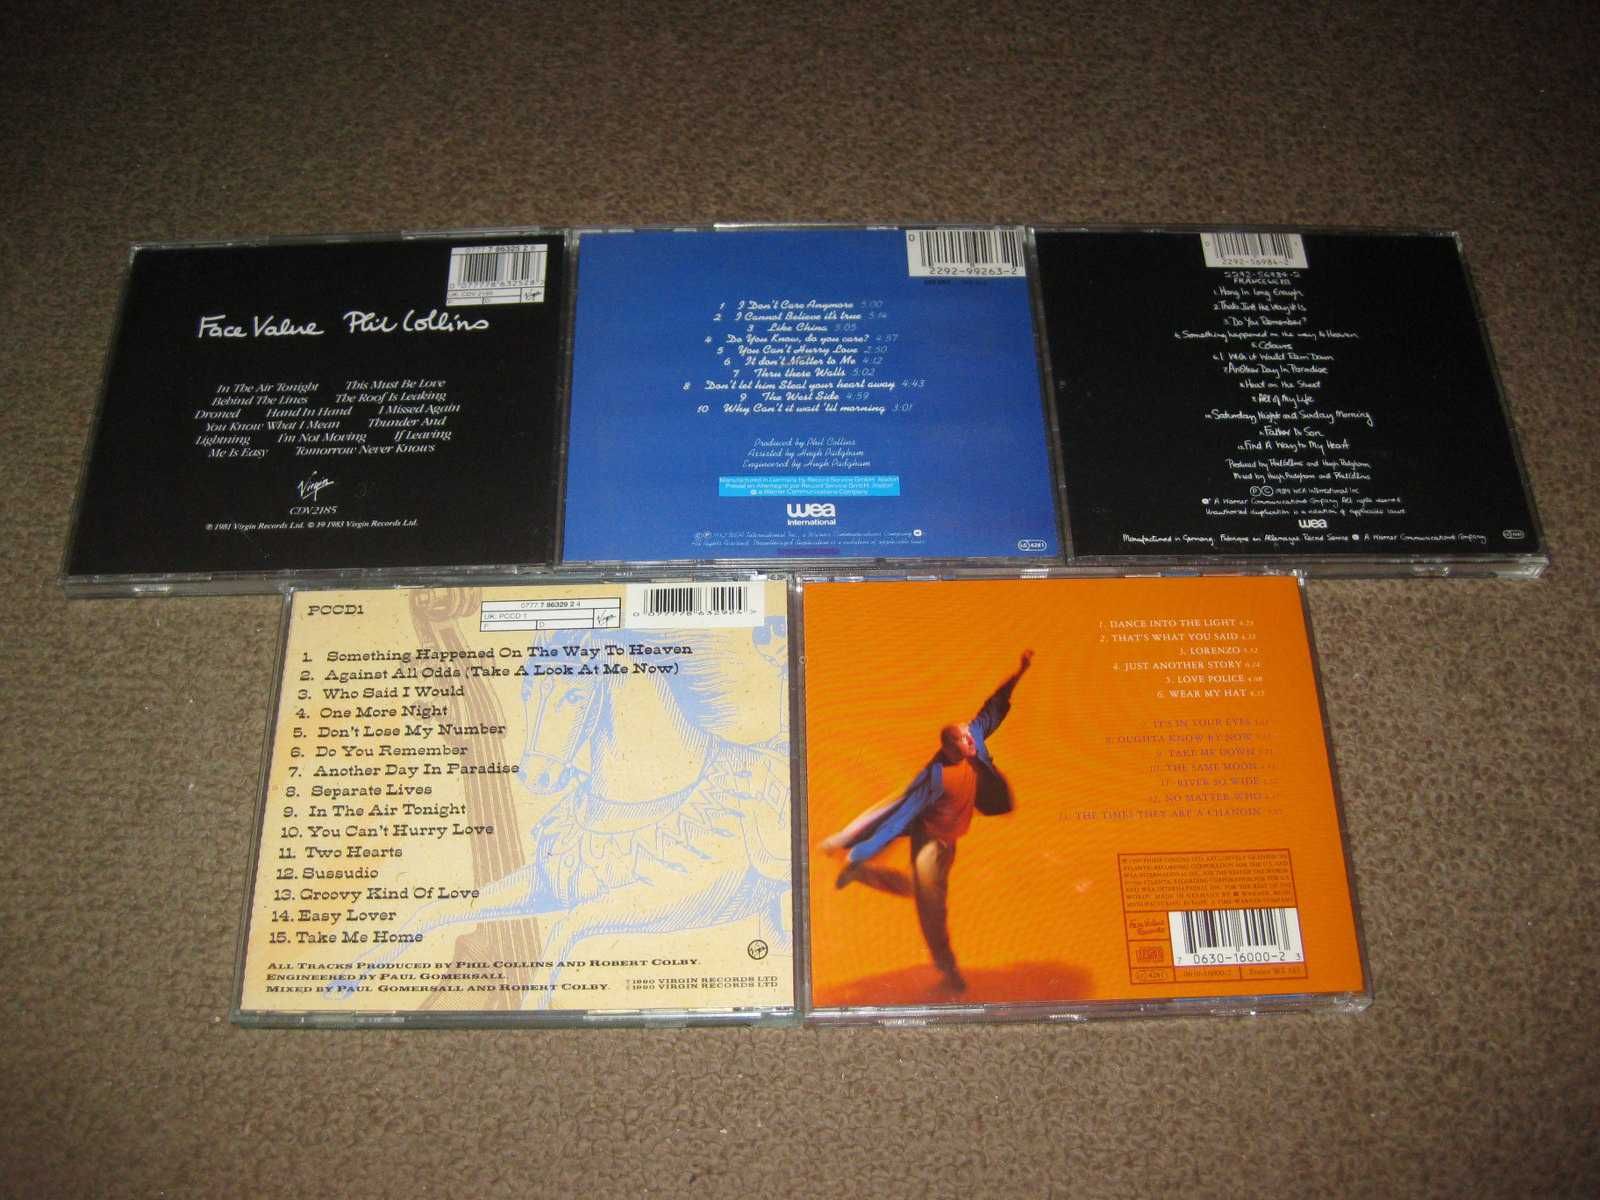 5 CDs do "Phil Collins" Portes Grátis!